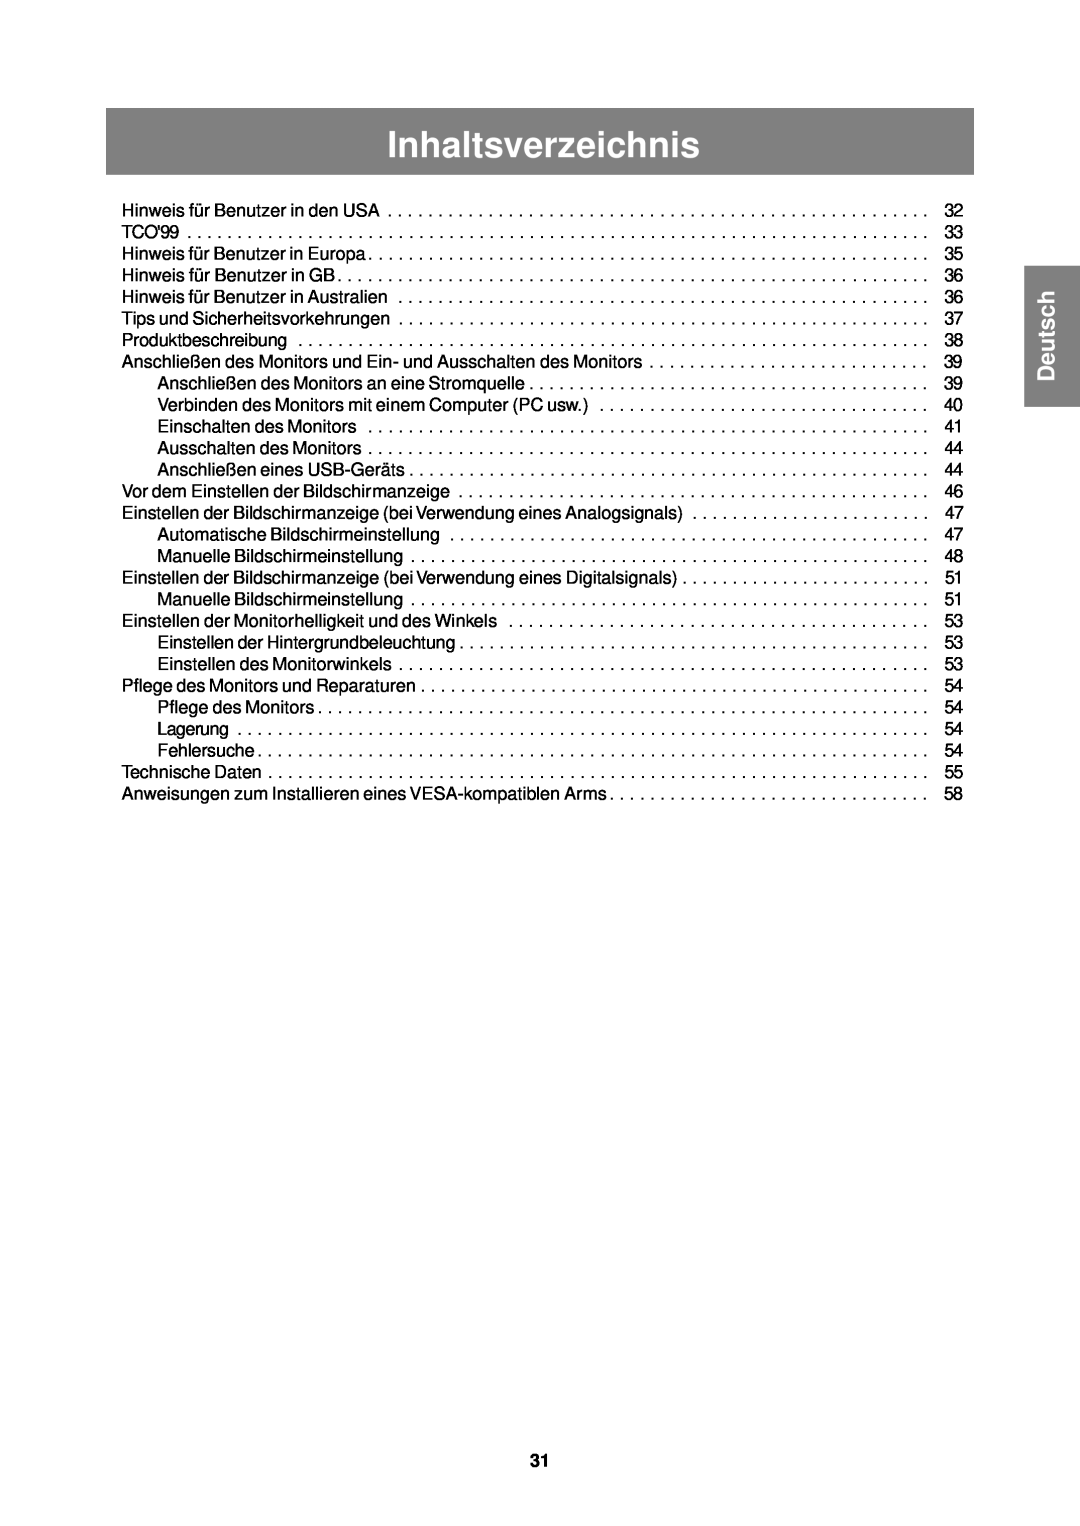 Sharp LL-T1610W operation manual Inhaltsverzeichnis, Deutsch 